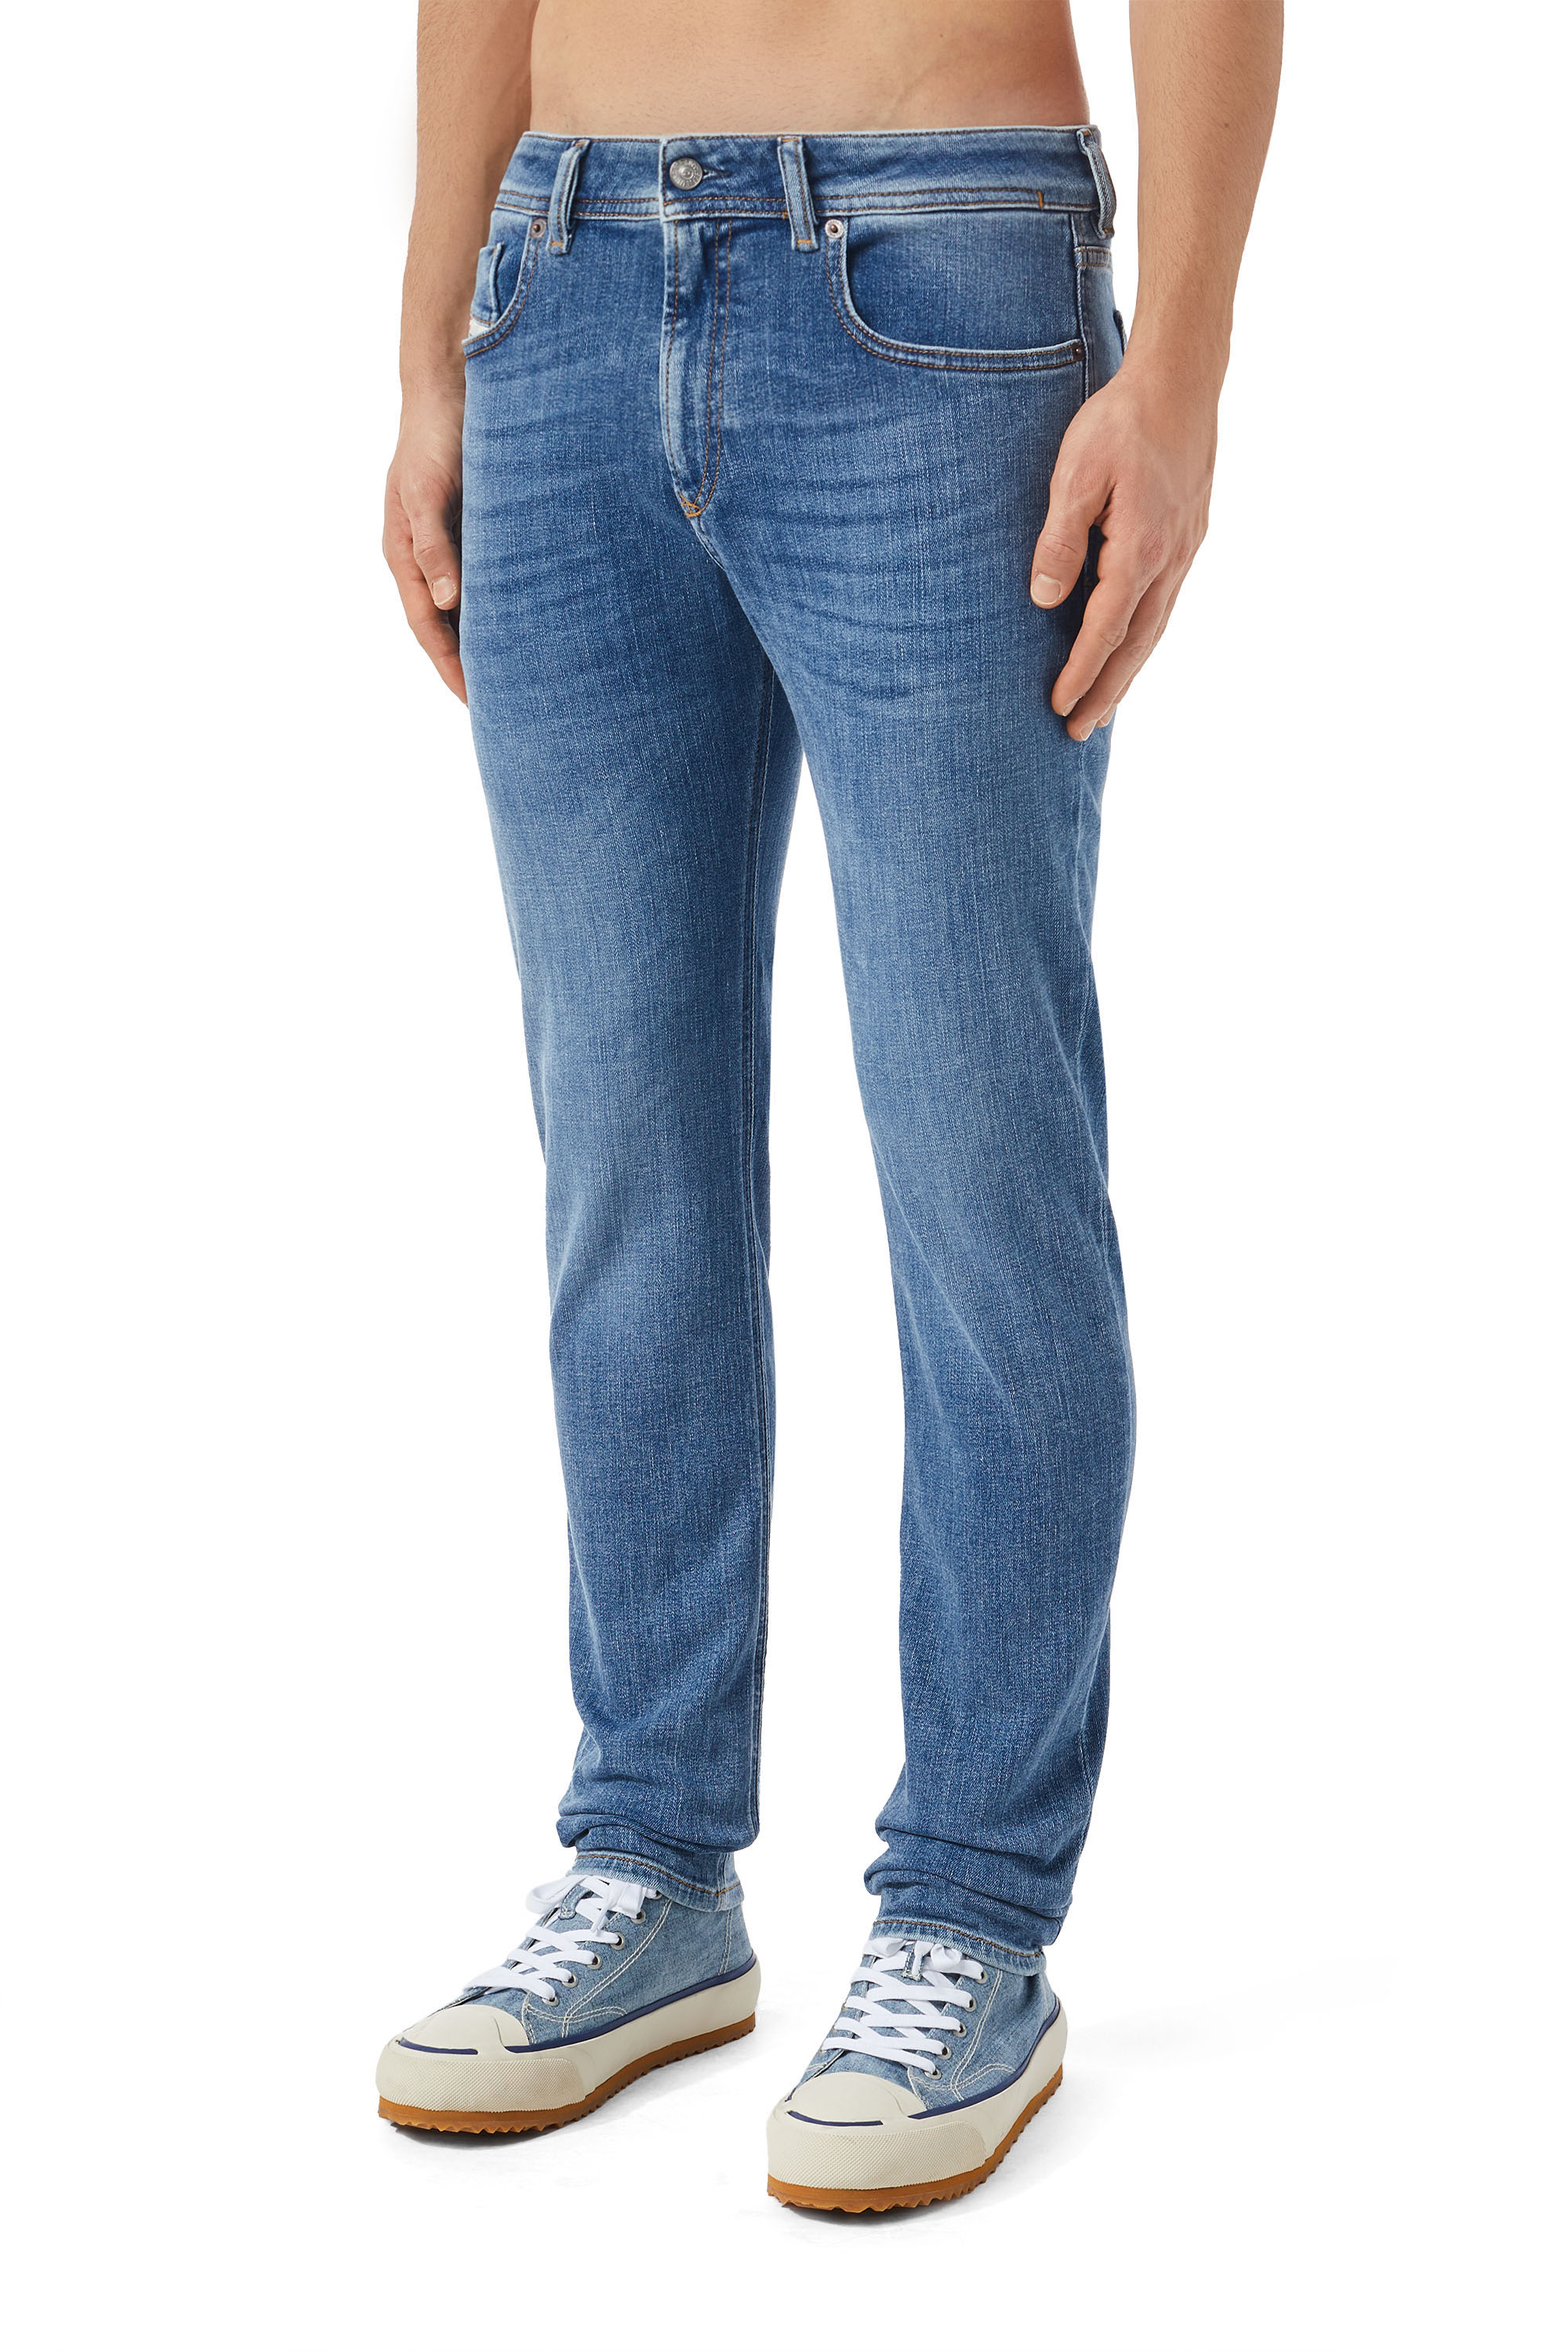 Aktualisieren mehr als 73 diesel slim skinny sleenker jeans neueste ...